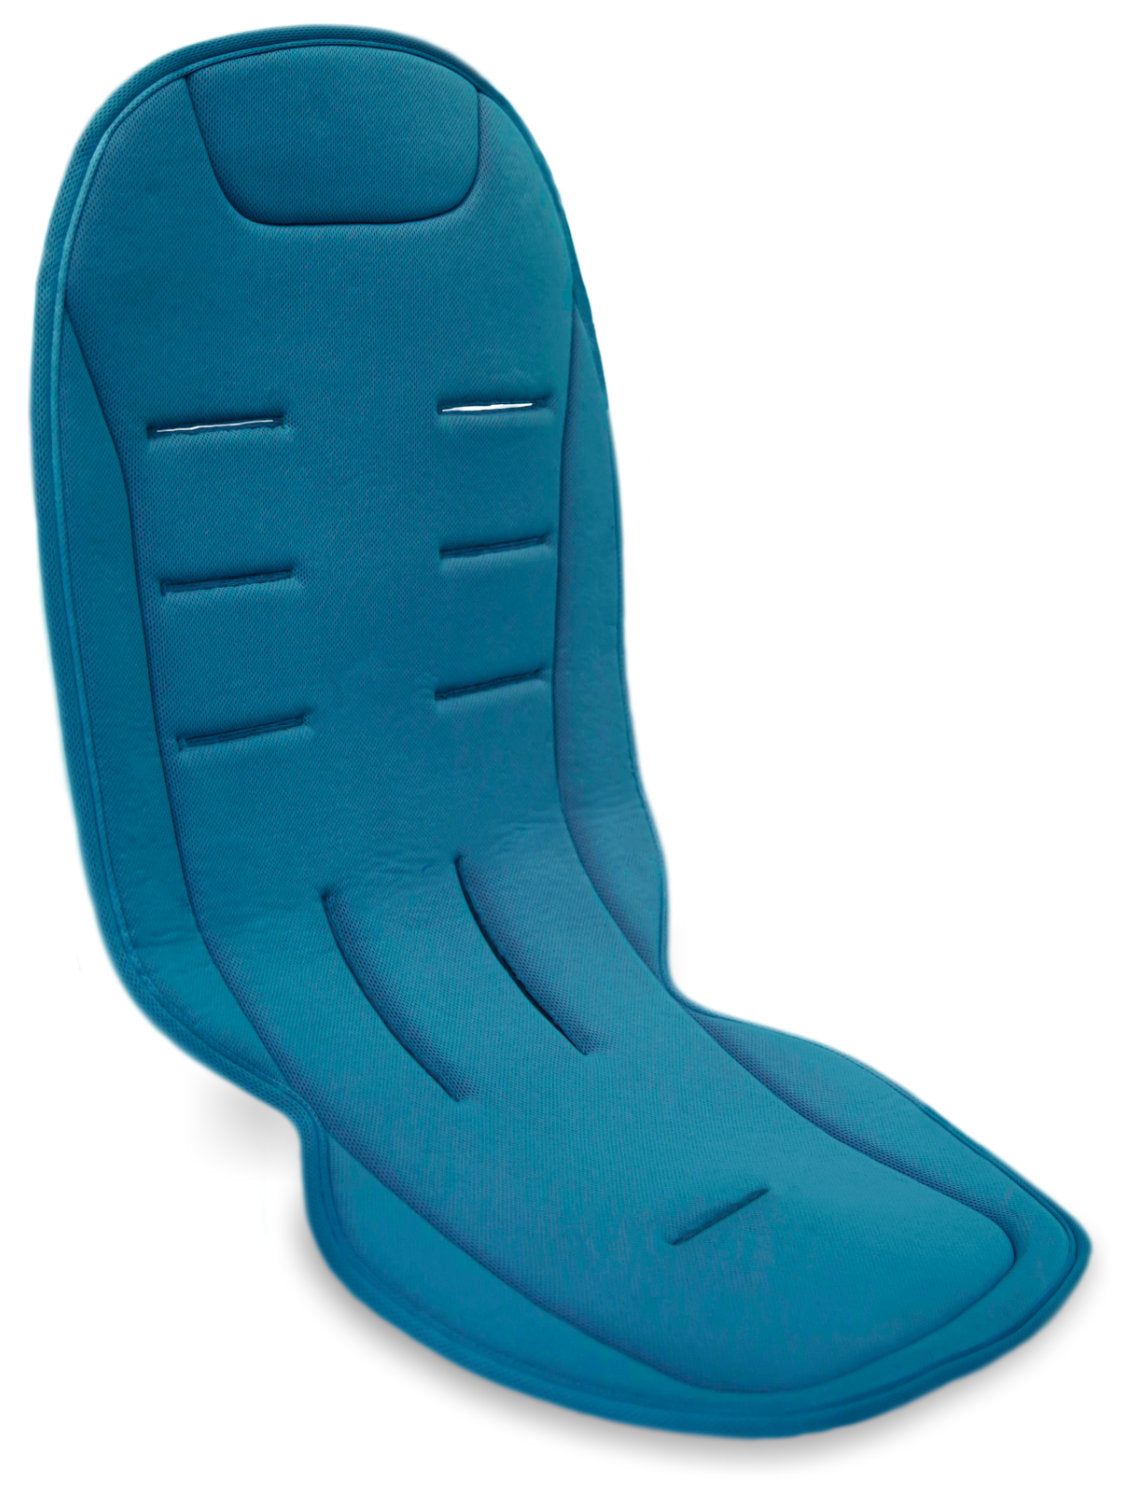 Komfort Sitzauflage Blau